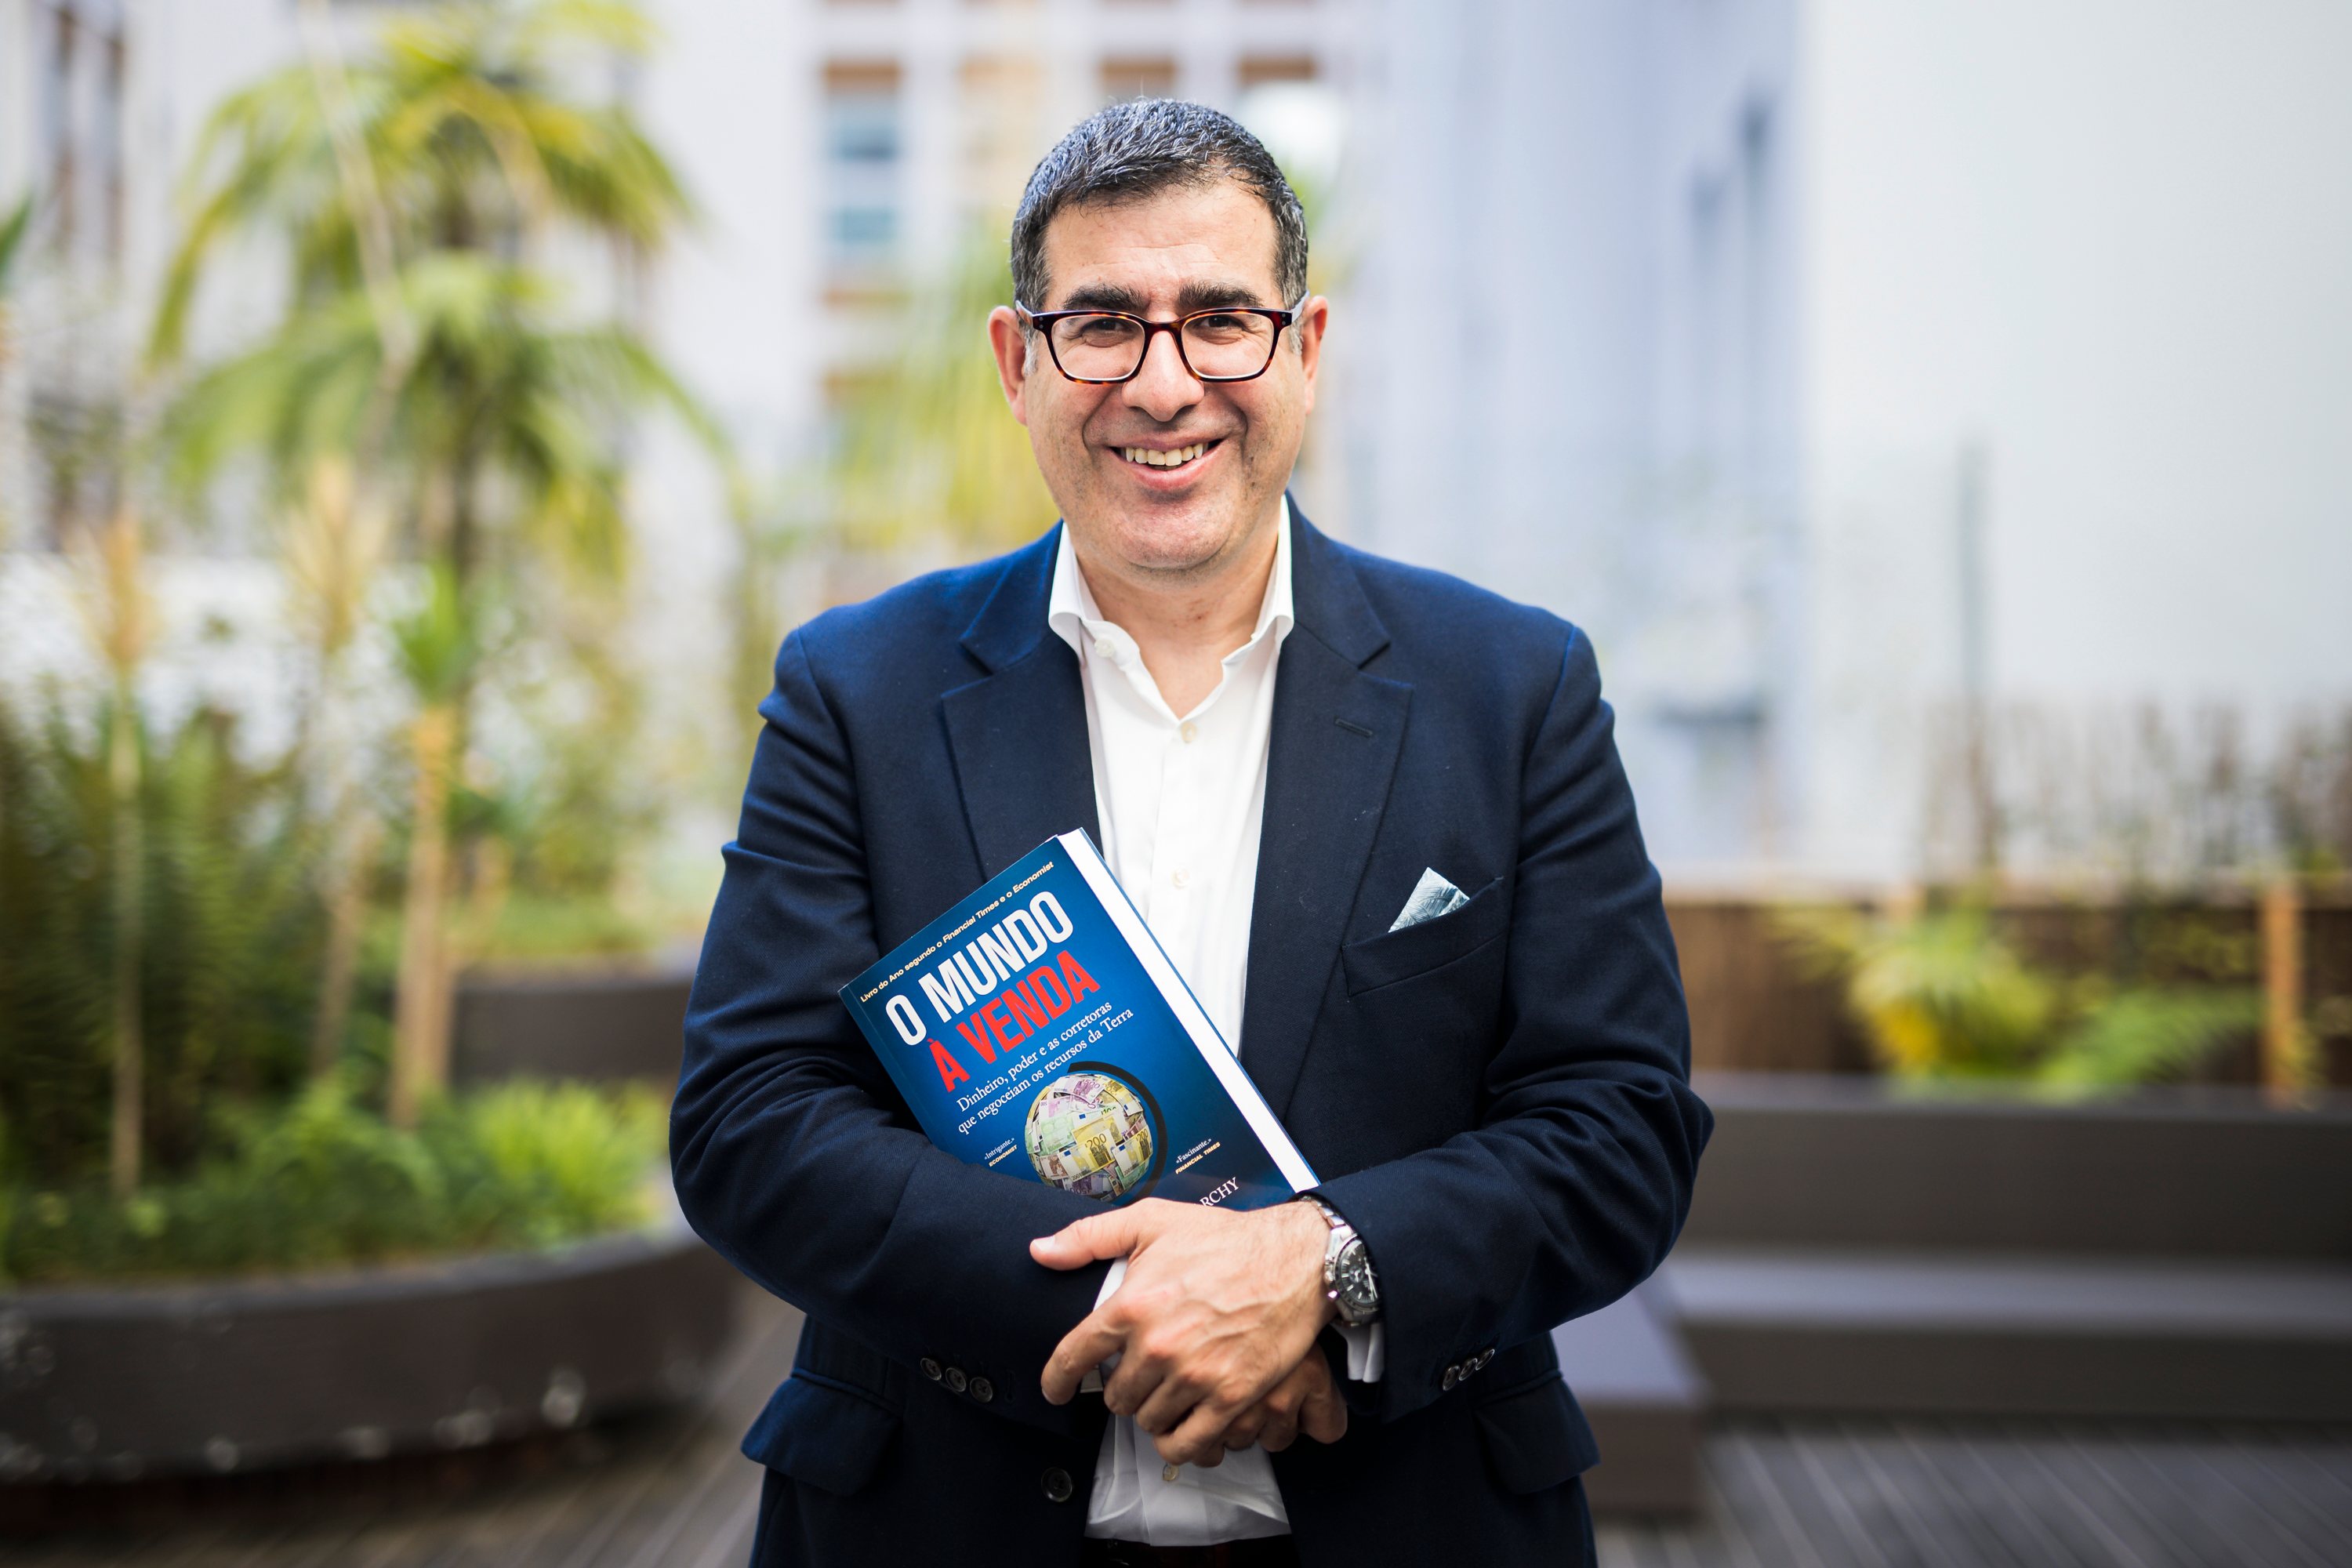 Entrevista com o Javier Blas, escritor e um dos autores do livro “O Mundo à venda”. Lisboa, 20 de Setembro de 2022. FILIPE AMORIM/OBSERVADOR